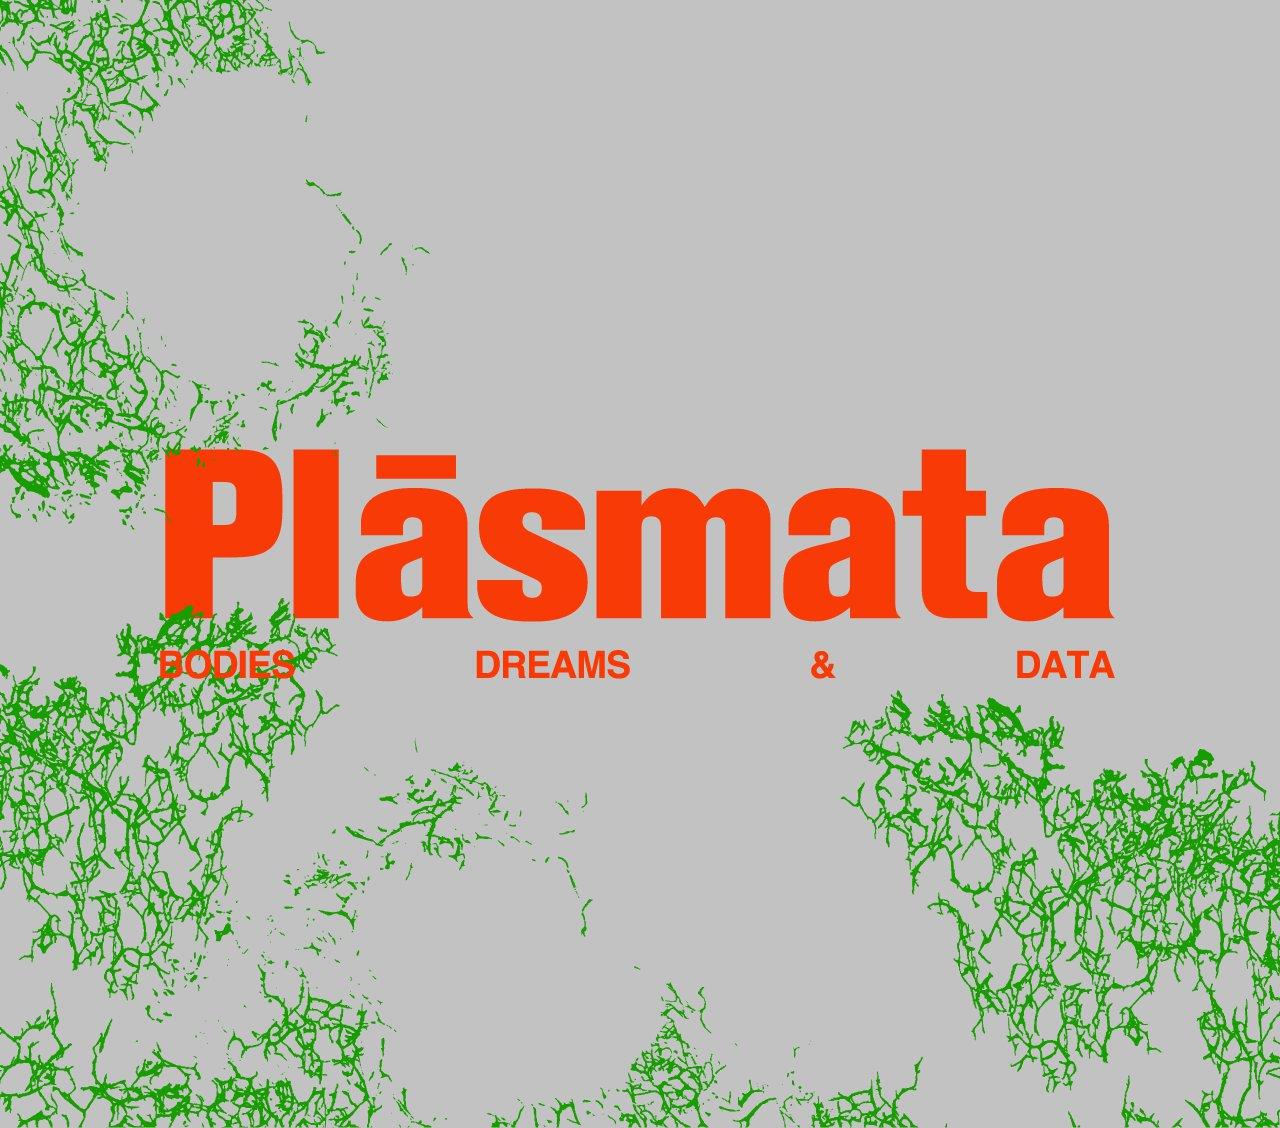 Plásmata: Bodies, Dreams, and Data